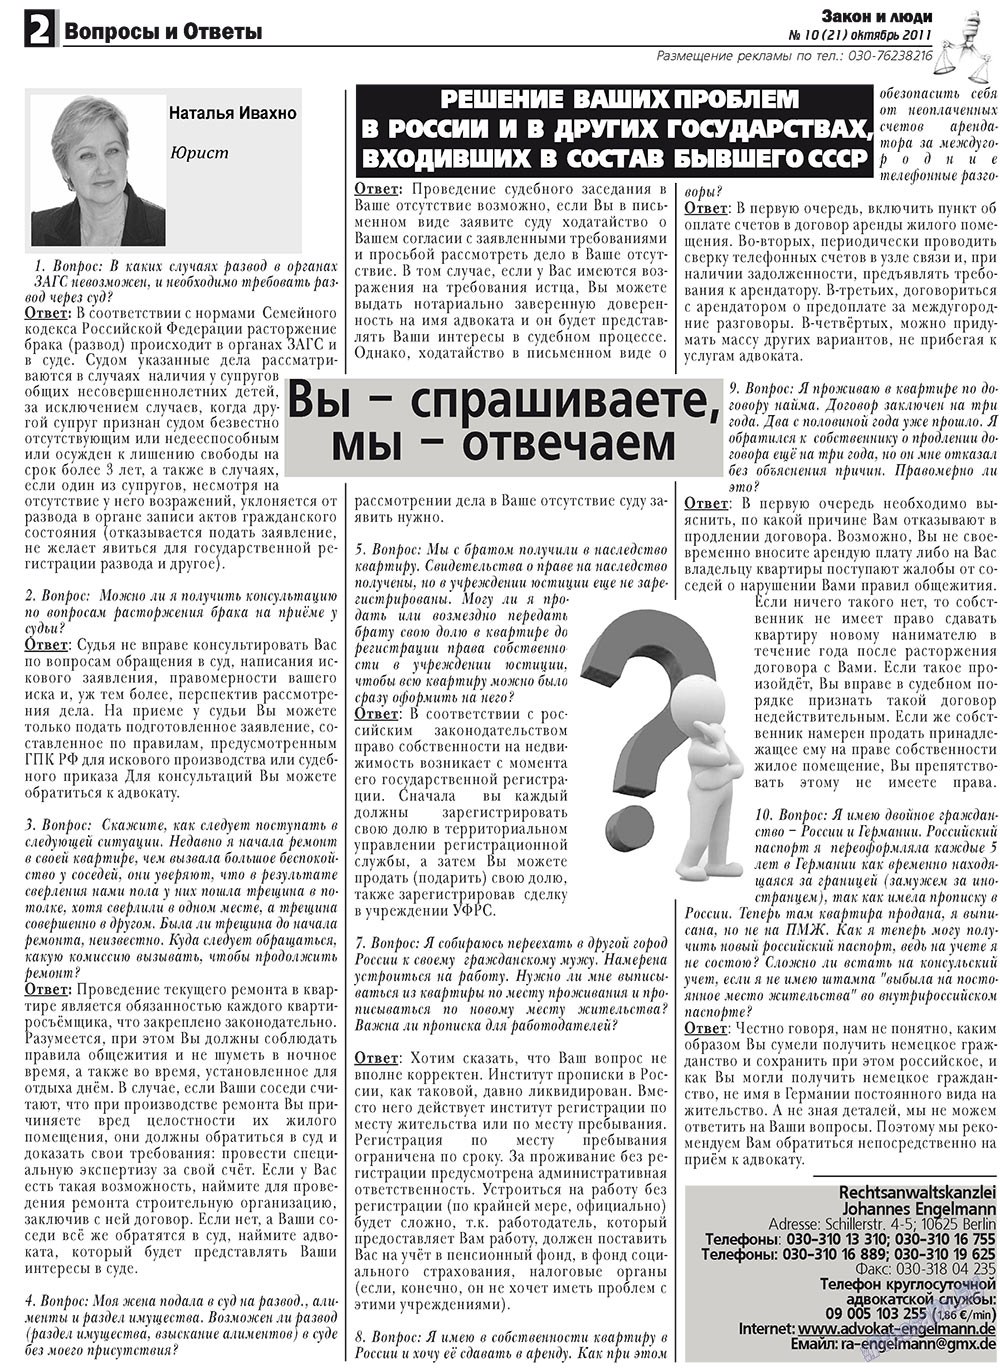 Закон и люди, газета. 2011 №10 стр.2